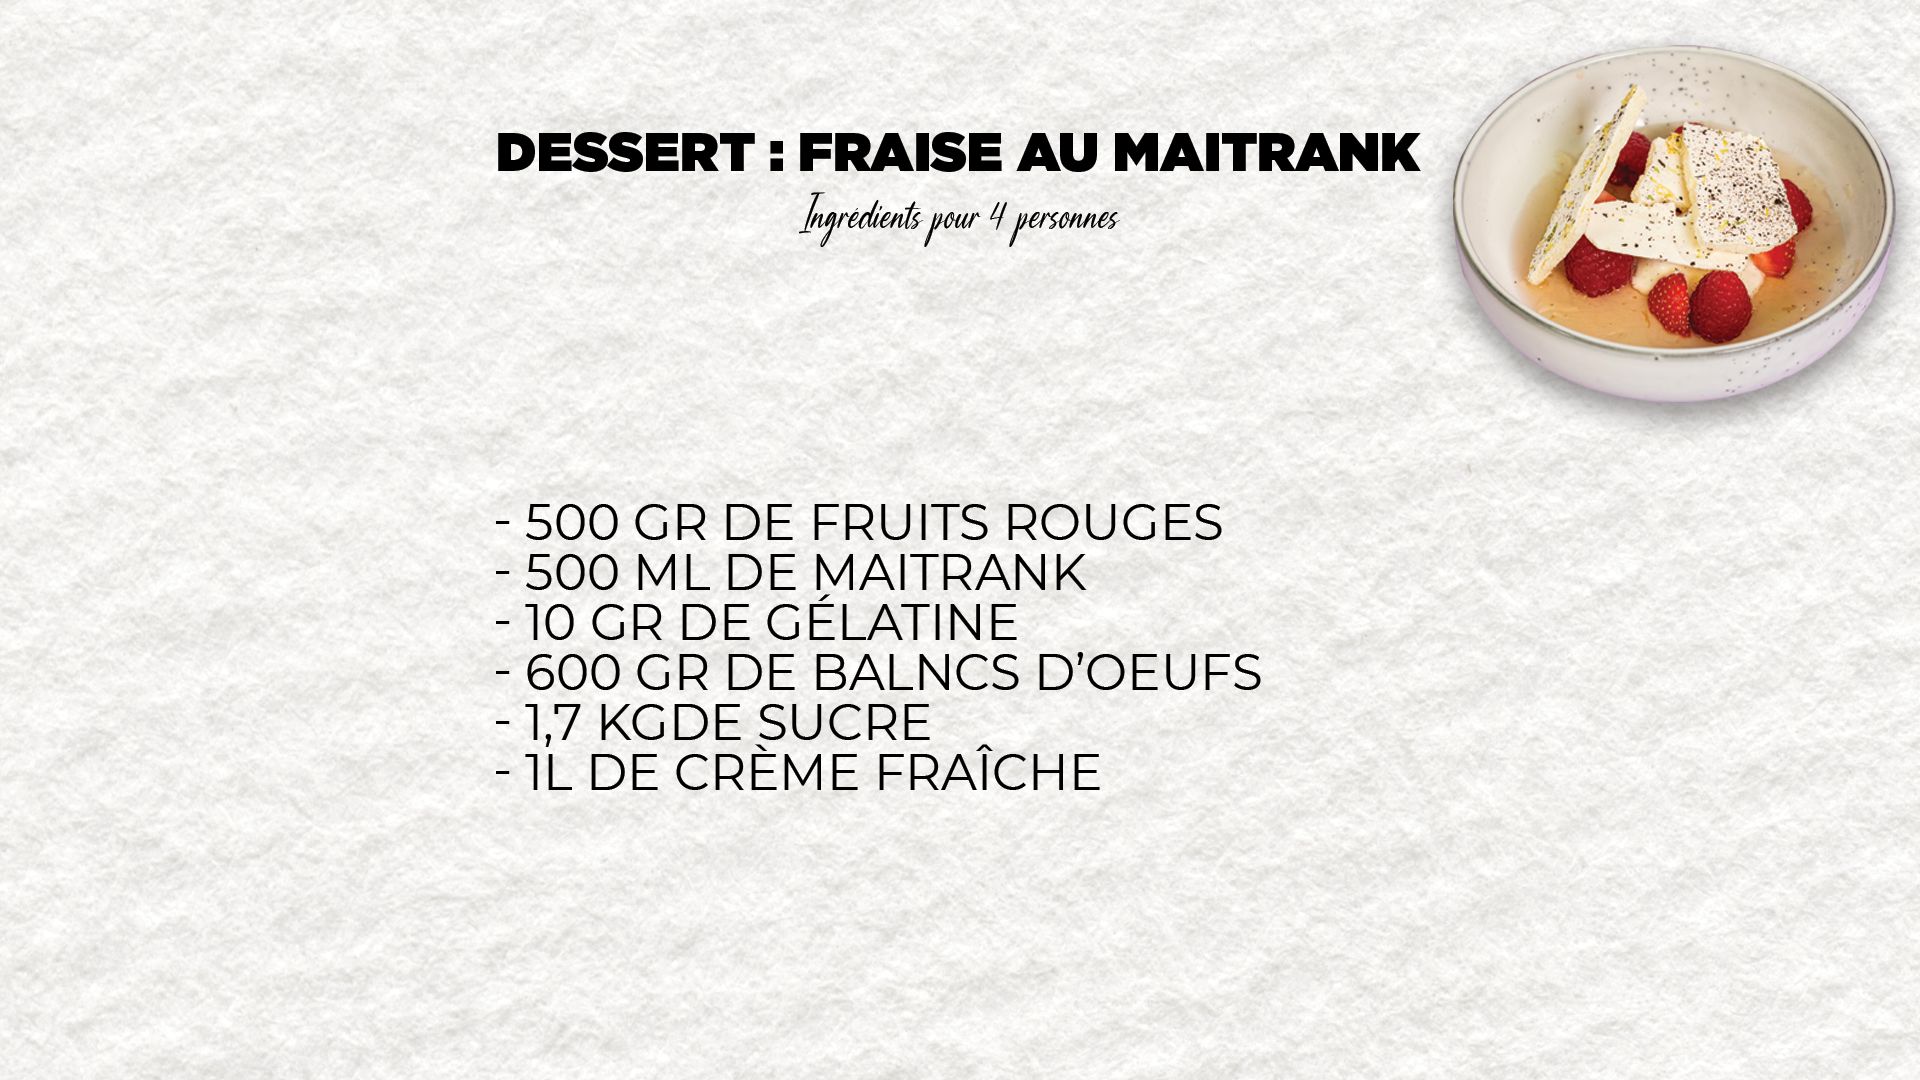 Le dessert d'Henri et Marc : fraise au maitrank